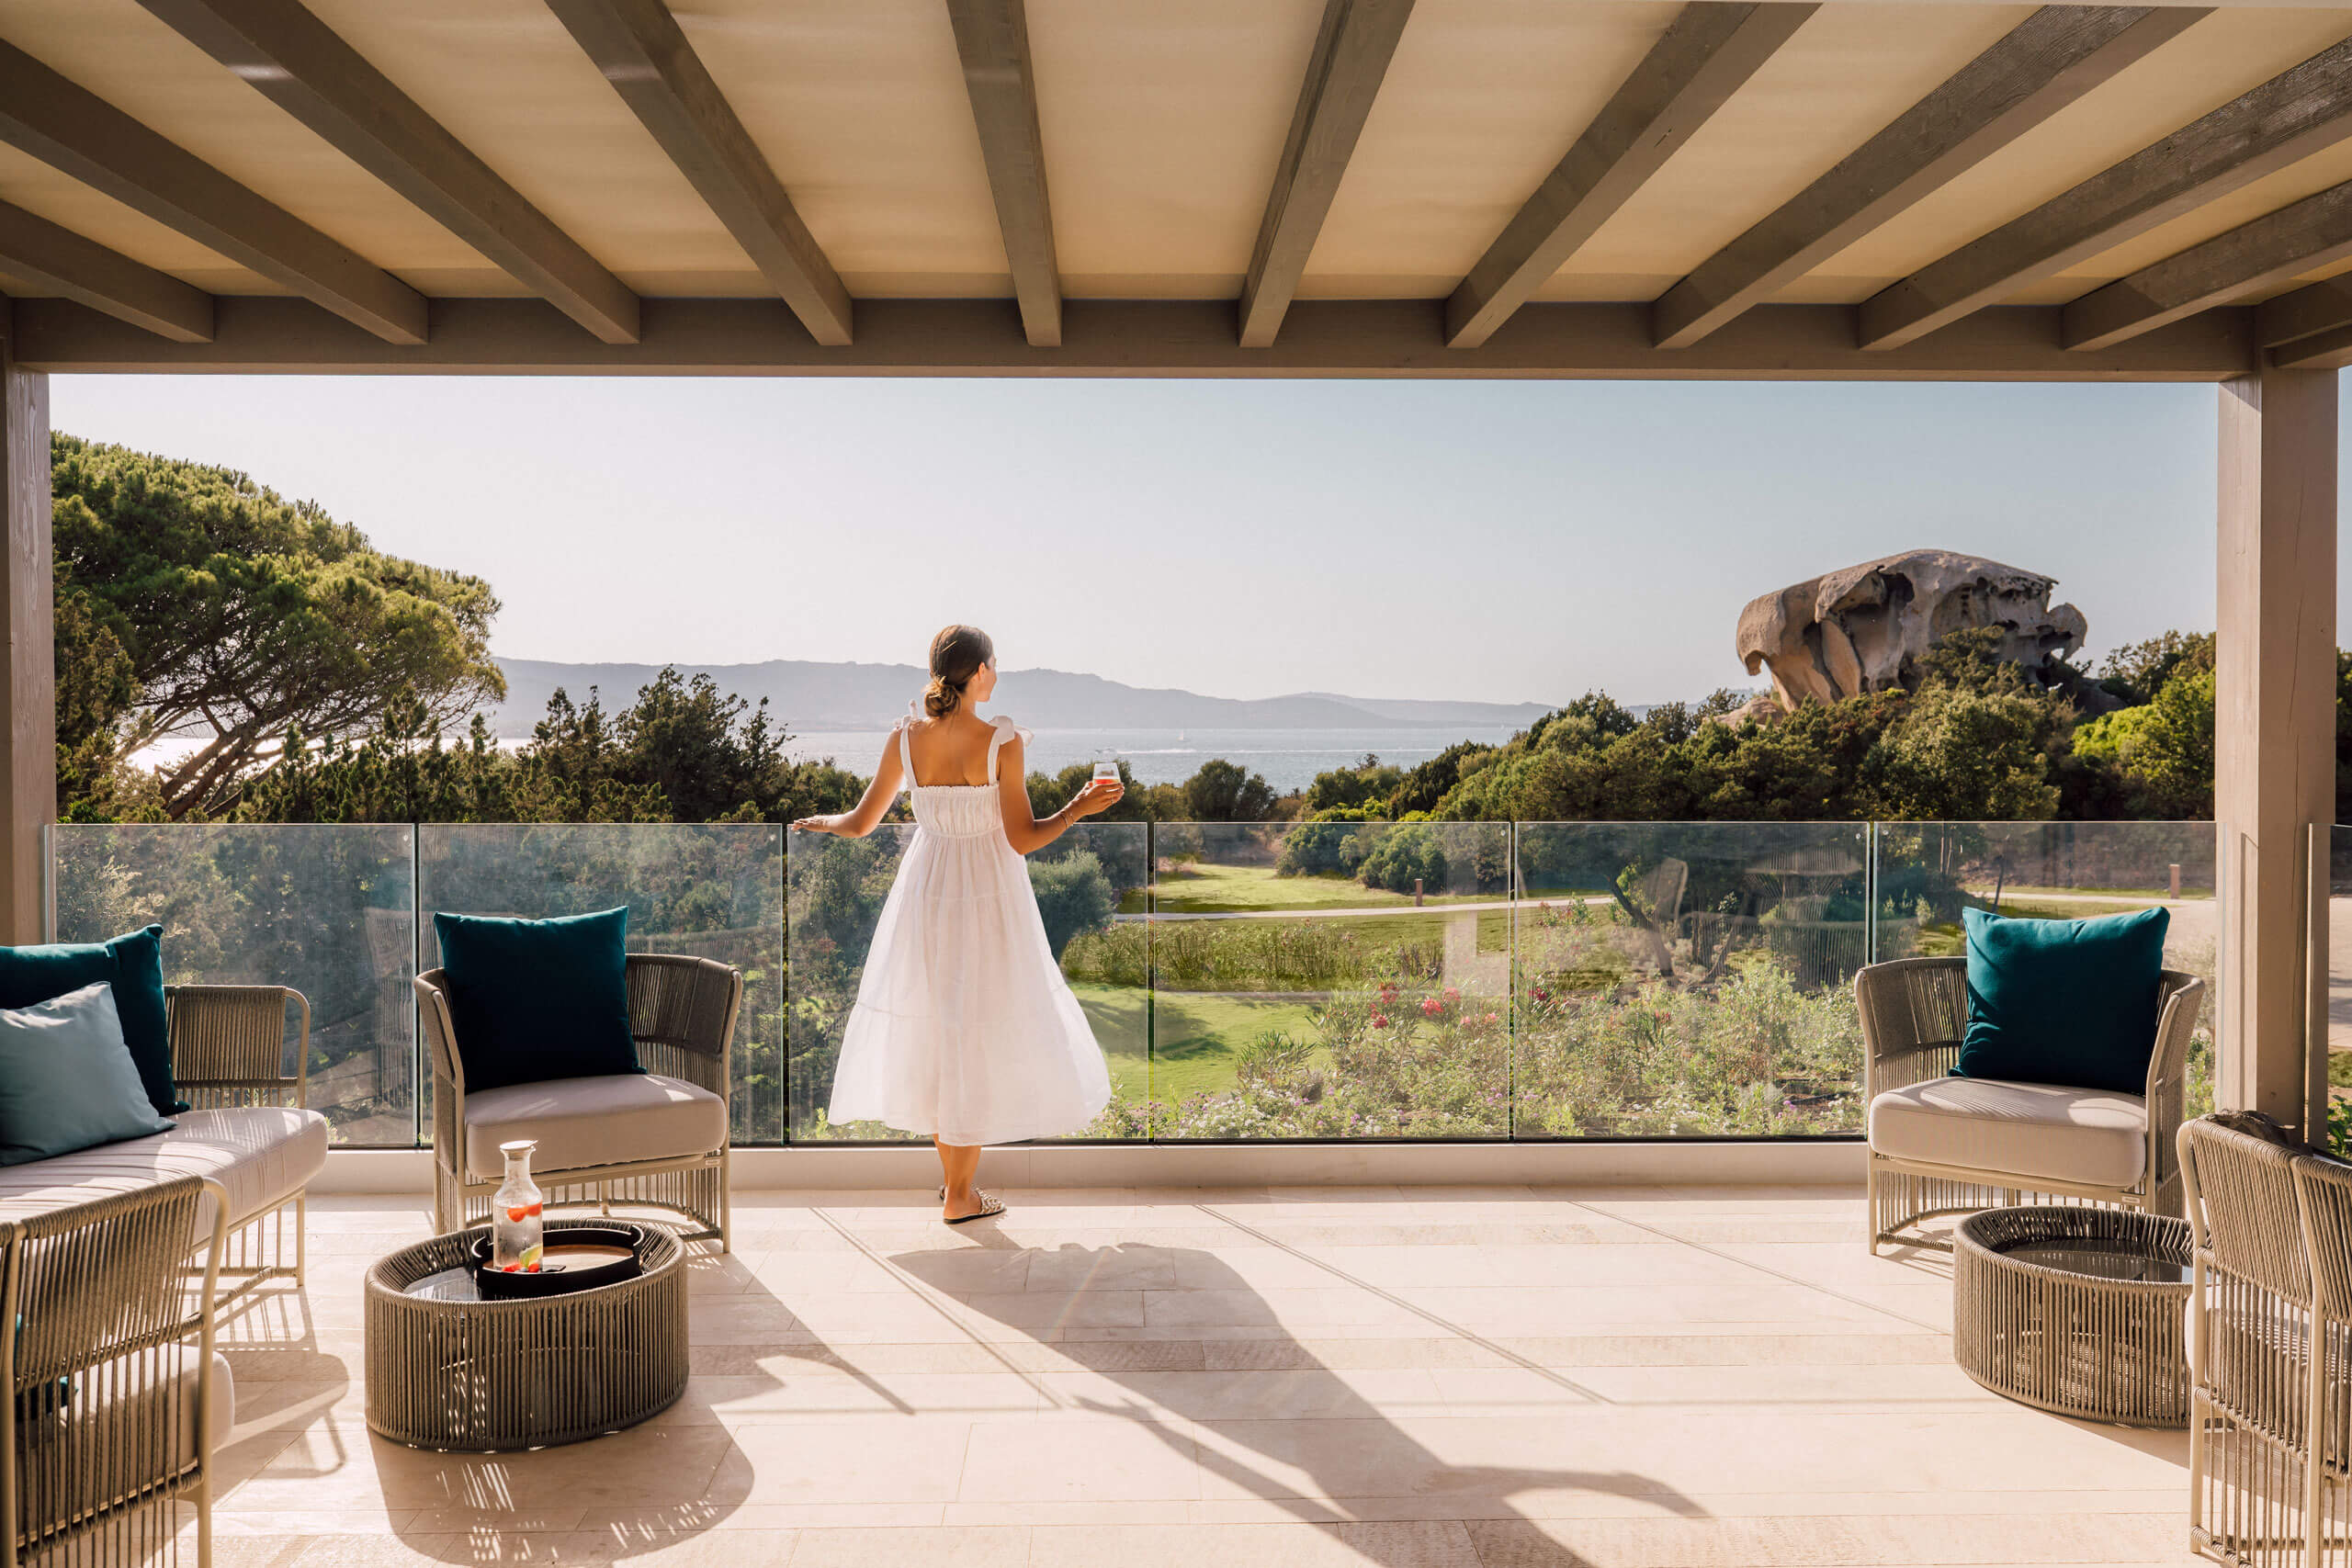 Eine Frau in einem weißen Kleid steht auf einer Terrasse und blickt auf eine Landschaft. 12.18. Inv